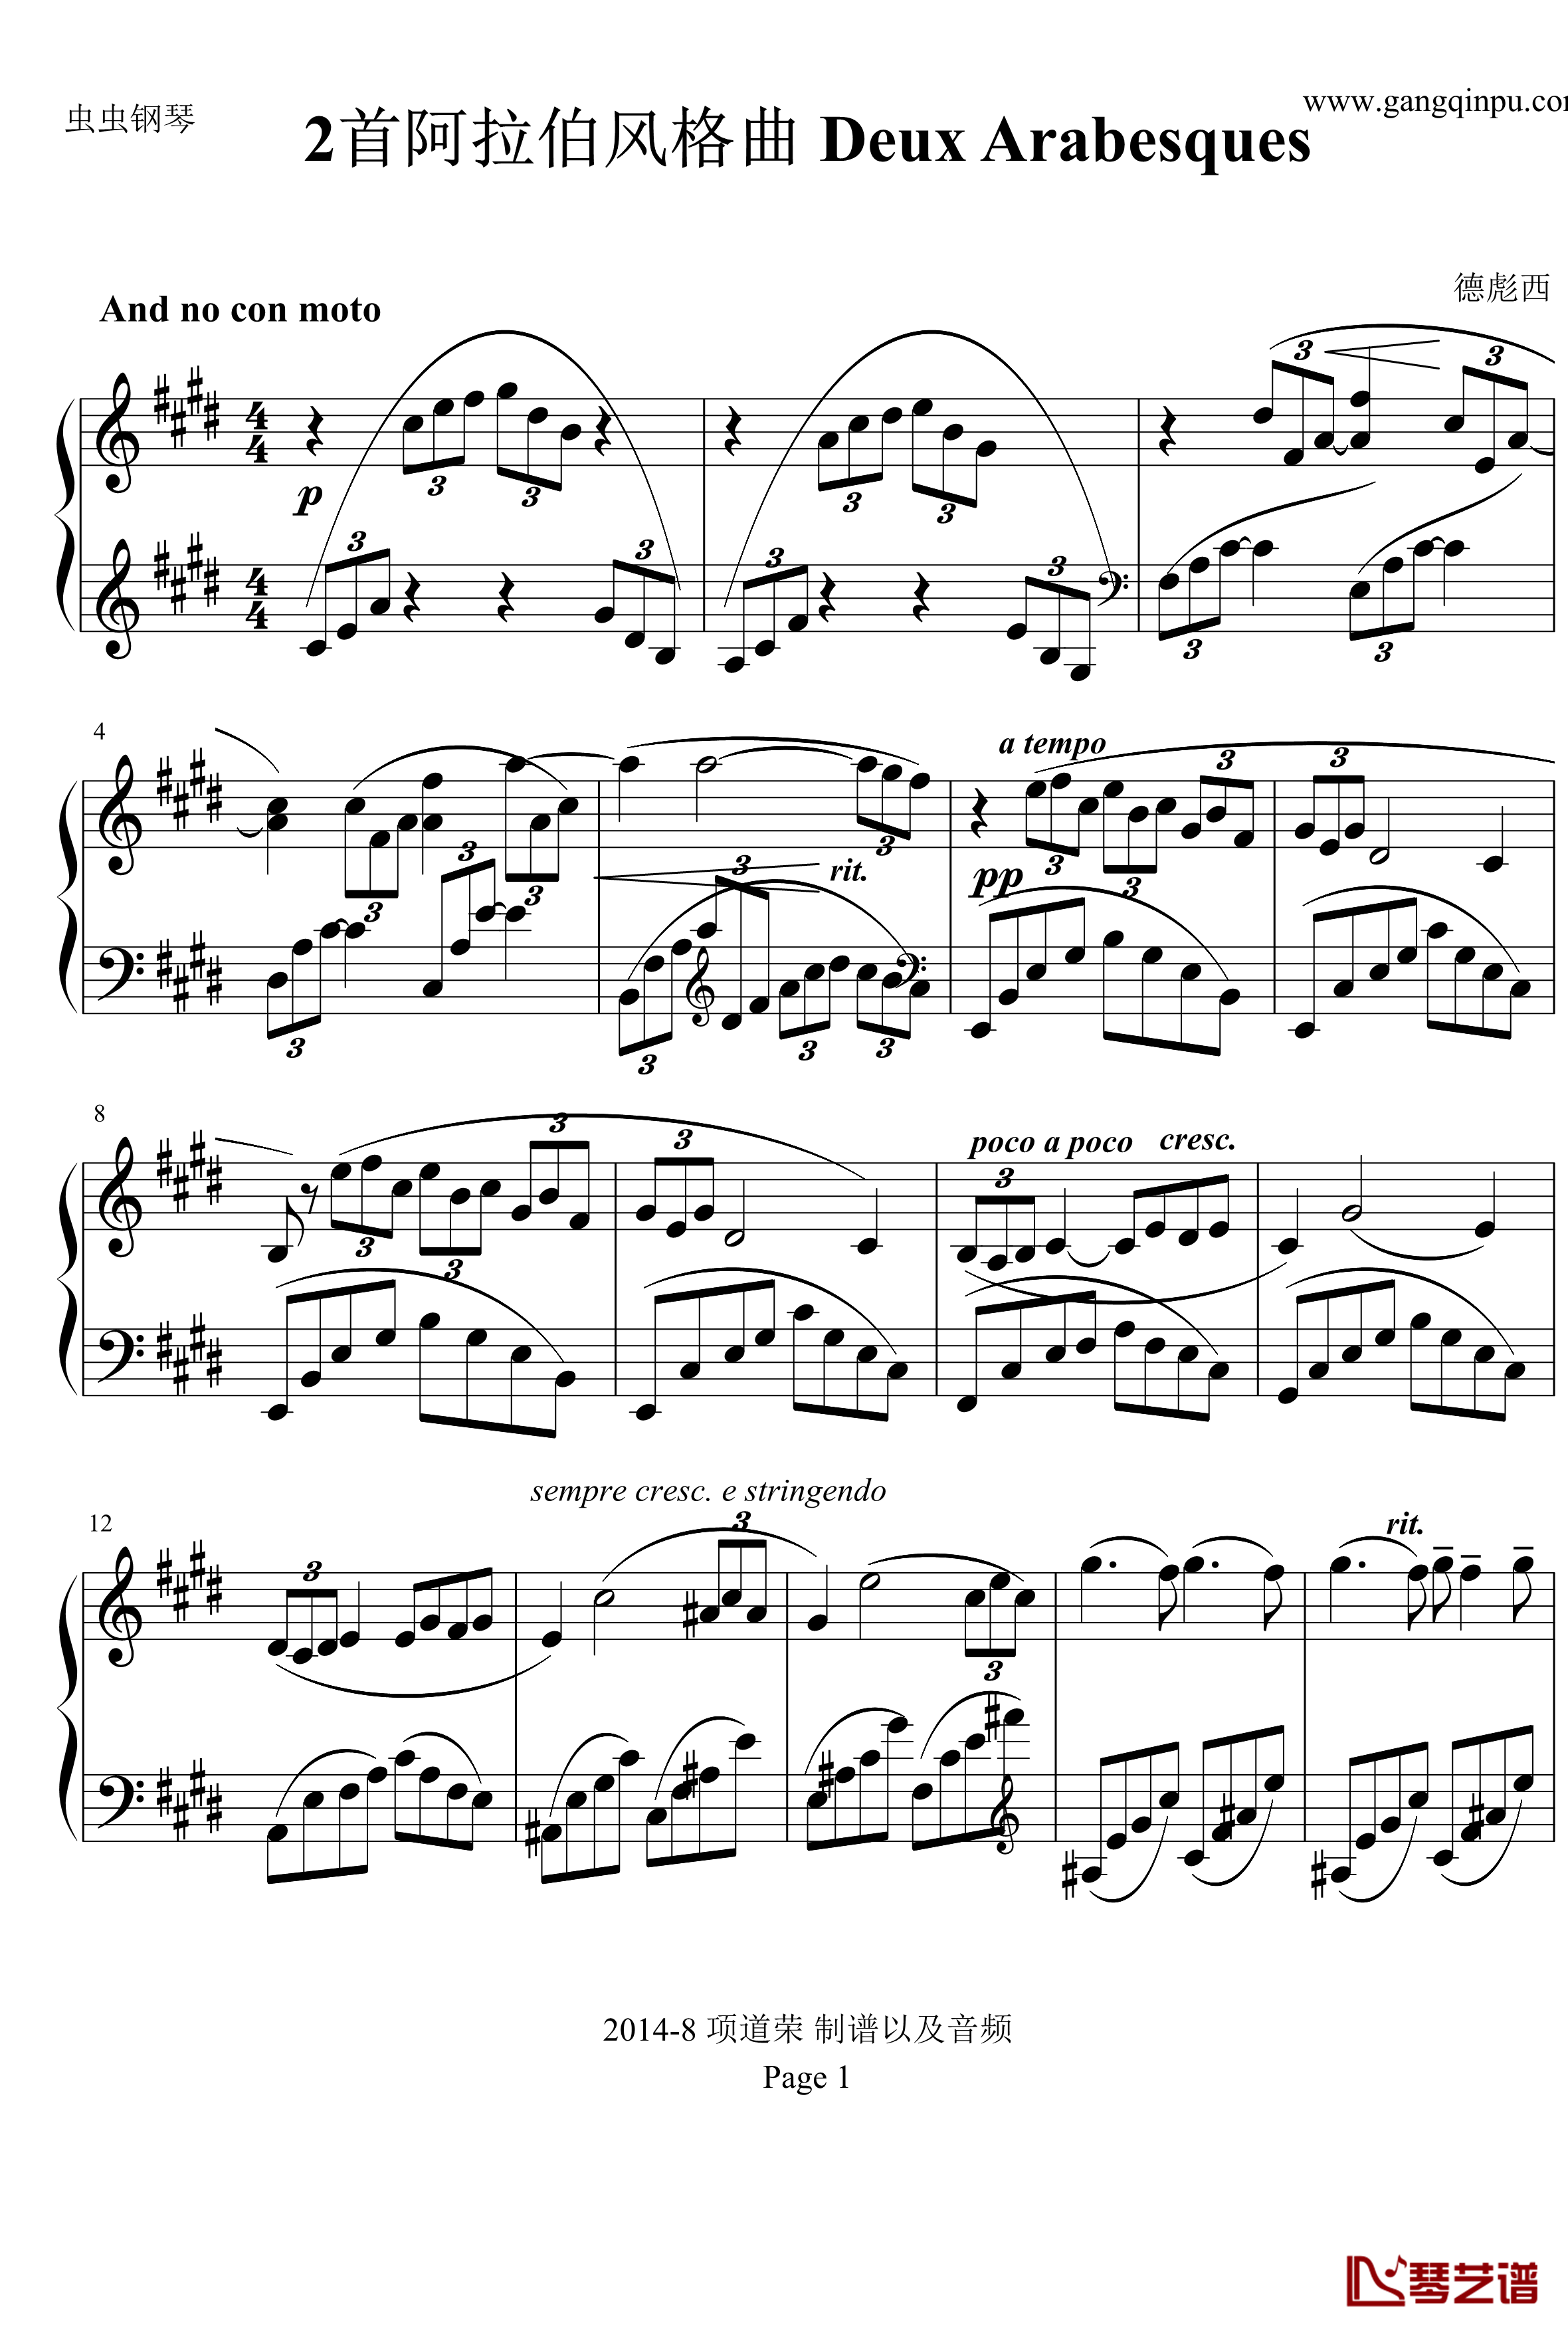 德彪西2首阿拉伯风格曲之一钢琴谱-德彪西1